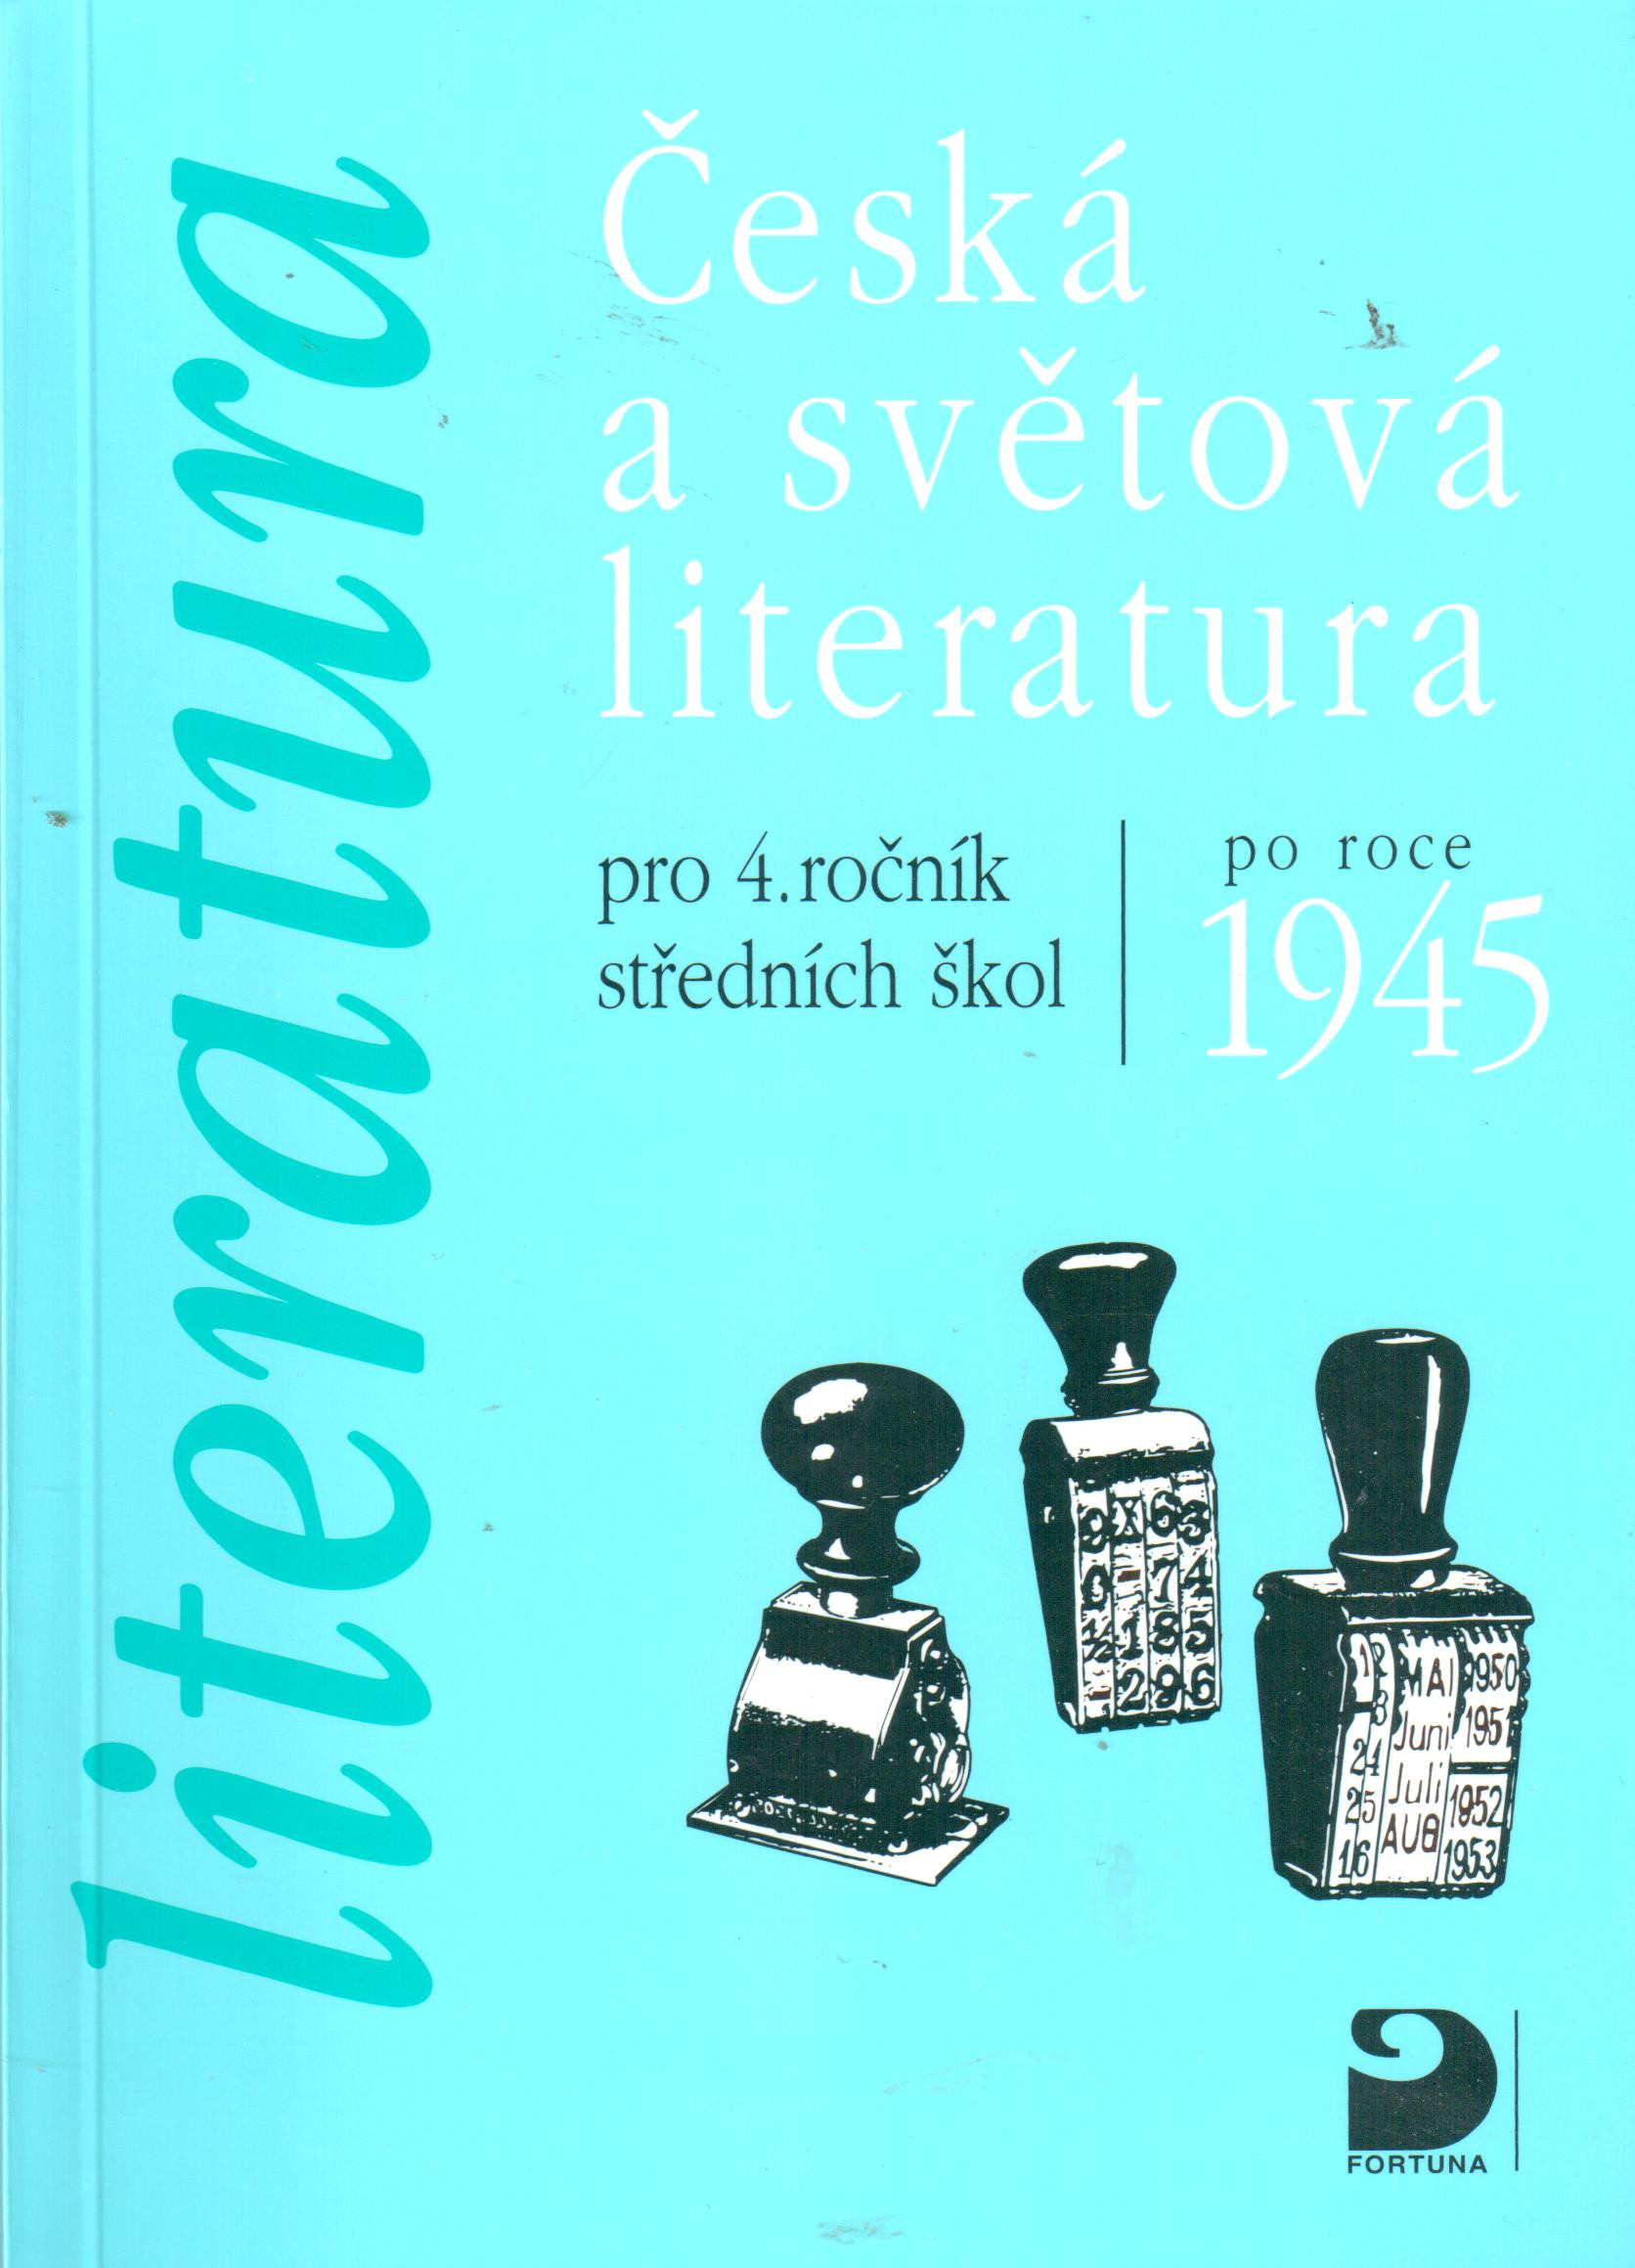 Česká a světová literatura po roce 1945 pro 4. ročník středních škol  - Náhled učebnice